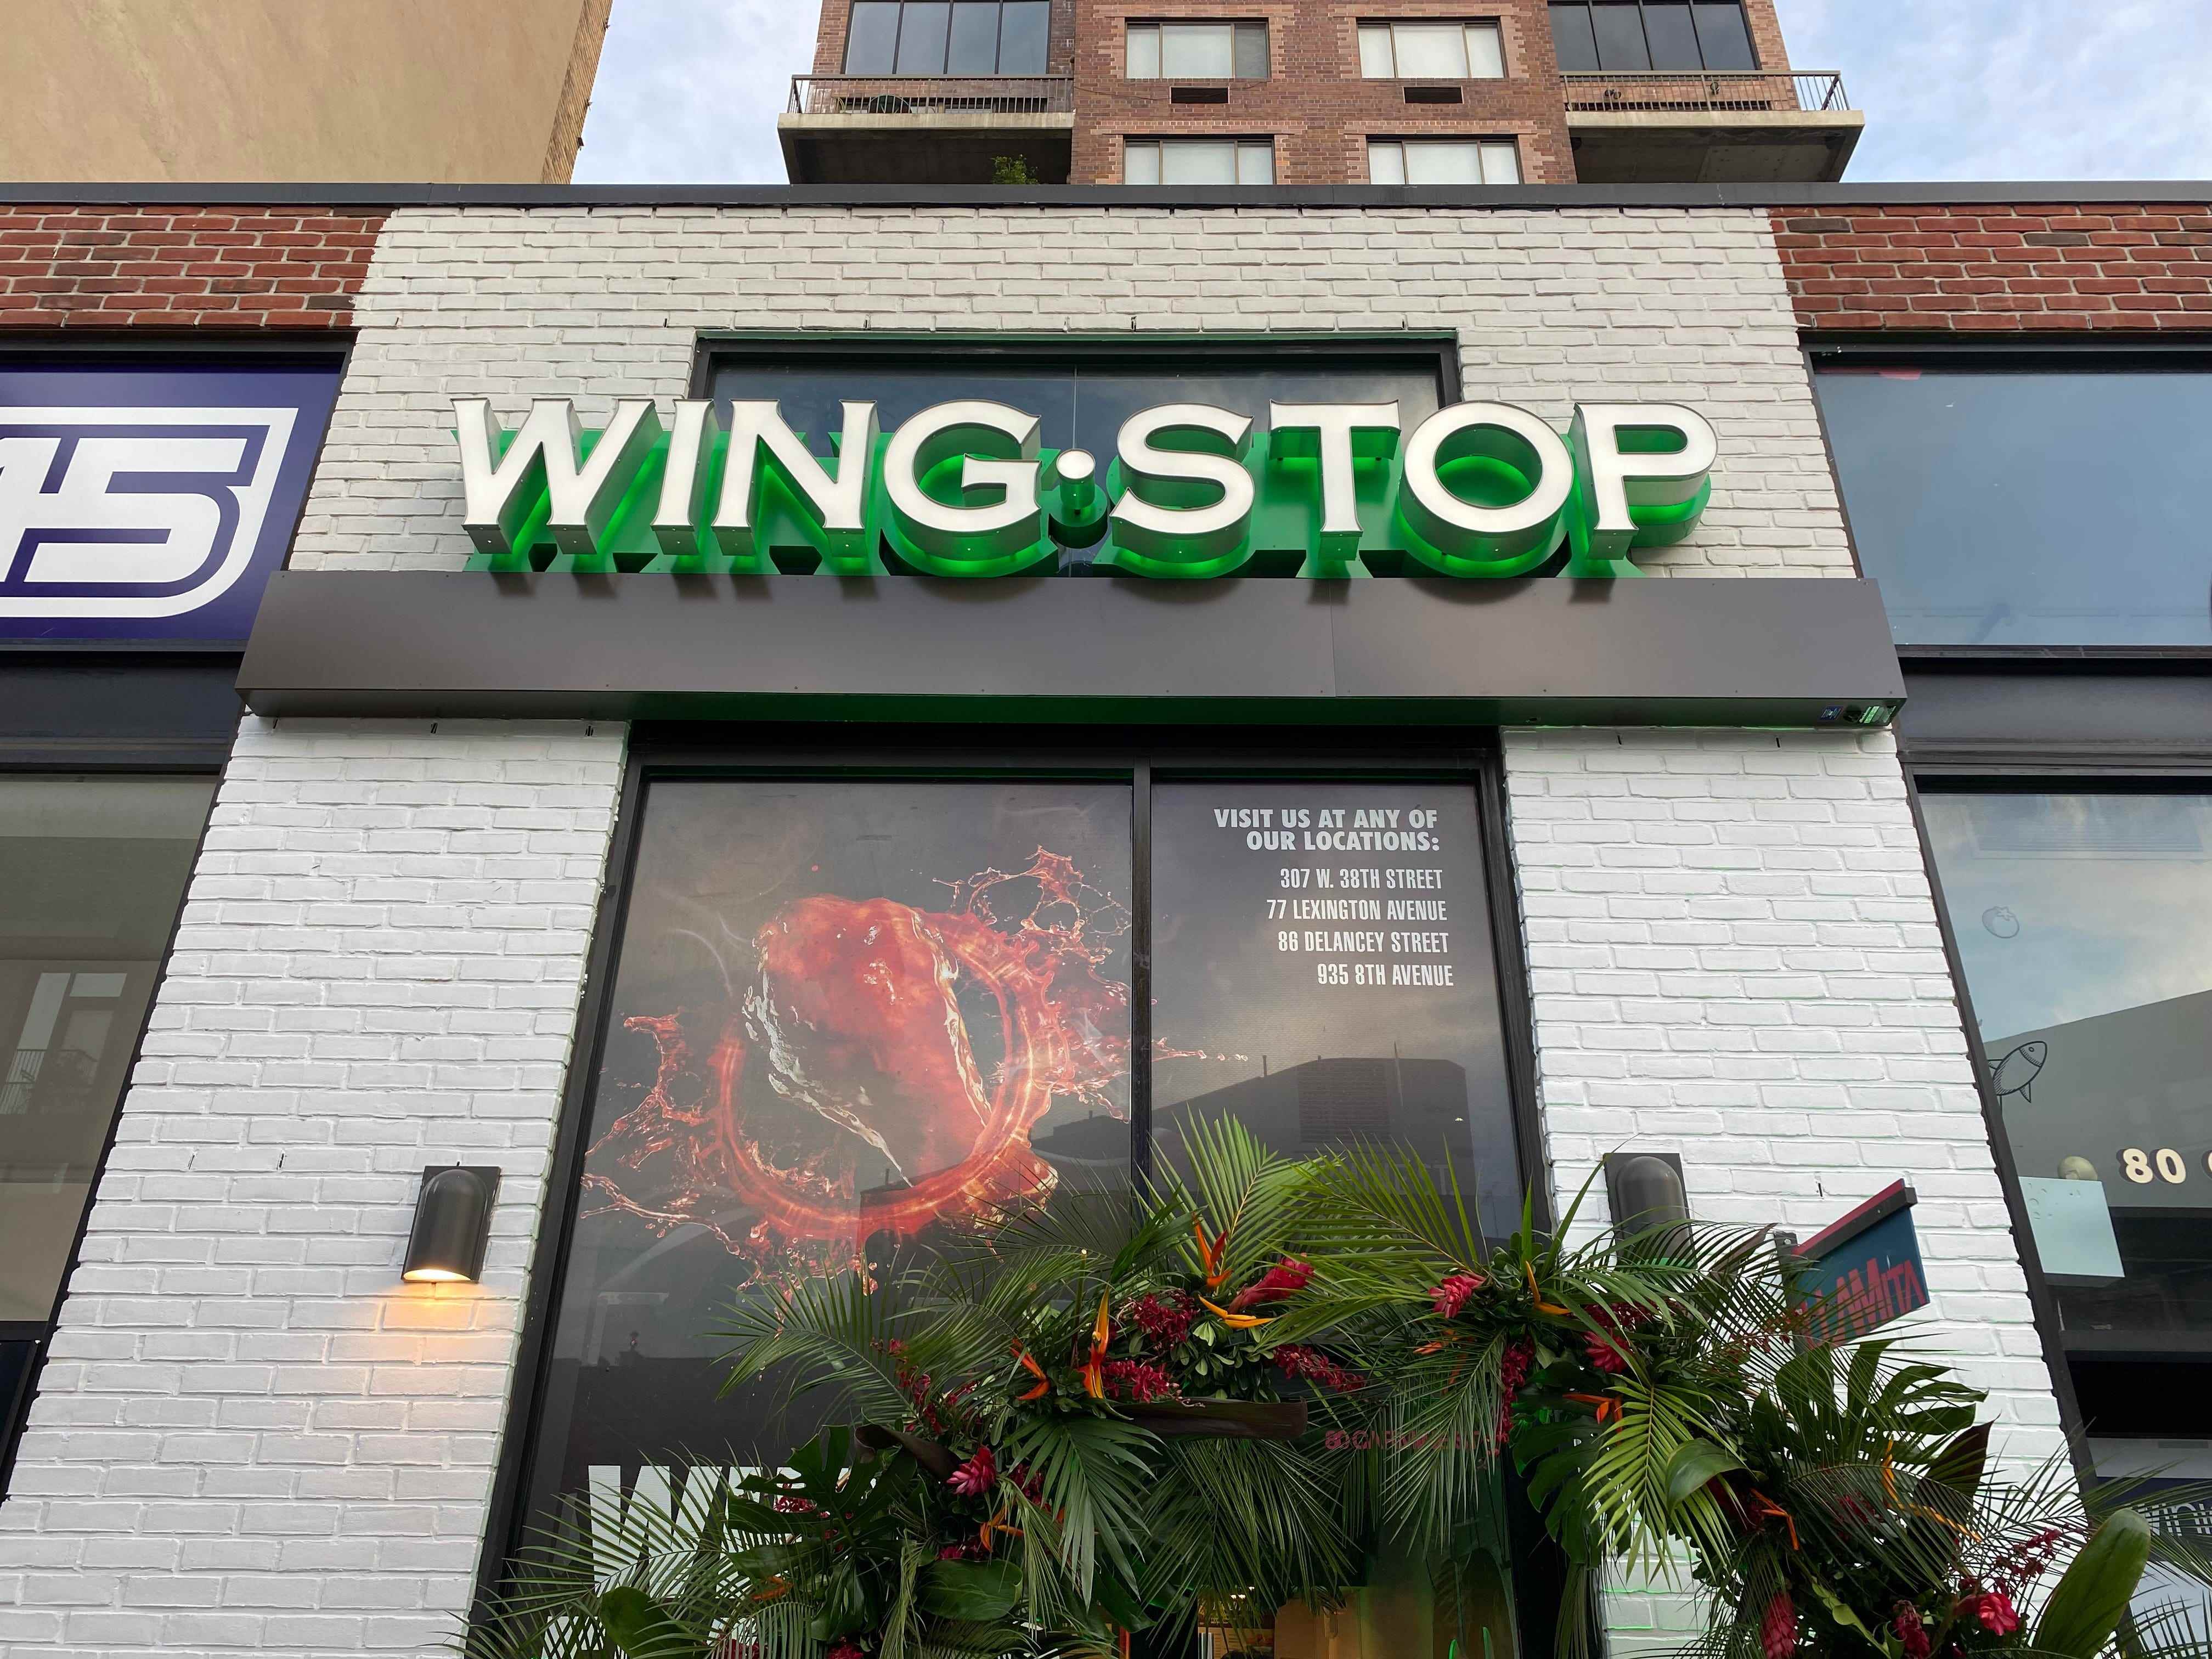 Wingstop-Schaufenster in New York City